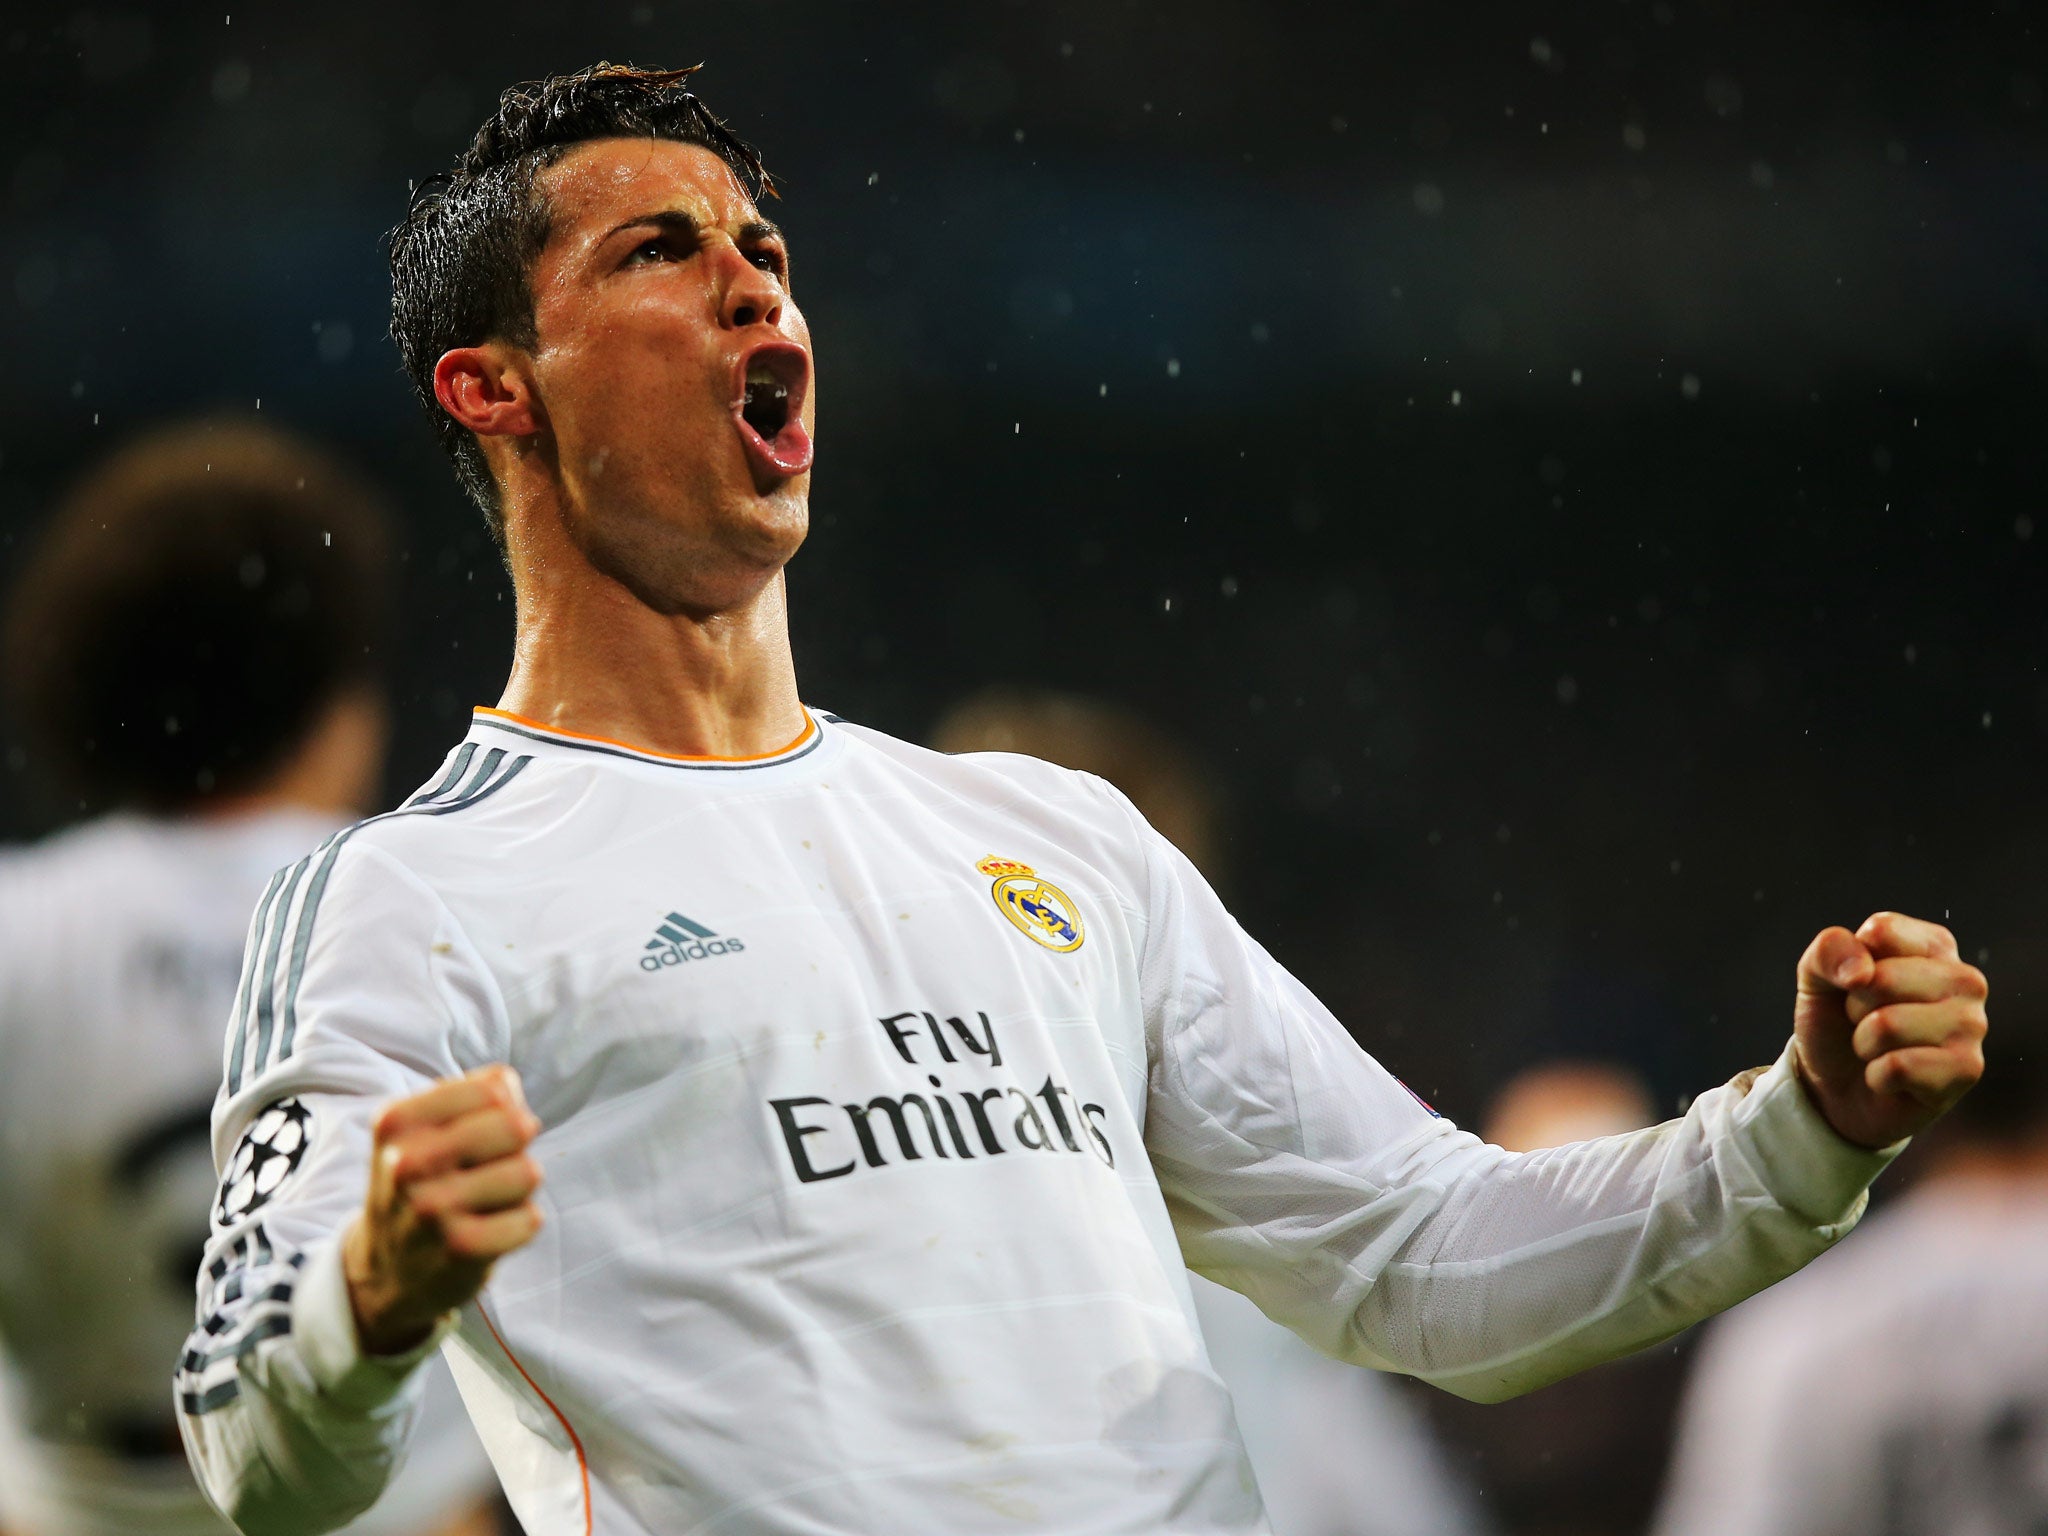 Cristiano Ronaldo celebrates scoring in Real Madrid's 3-0 win over Borussia Dortmund